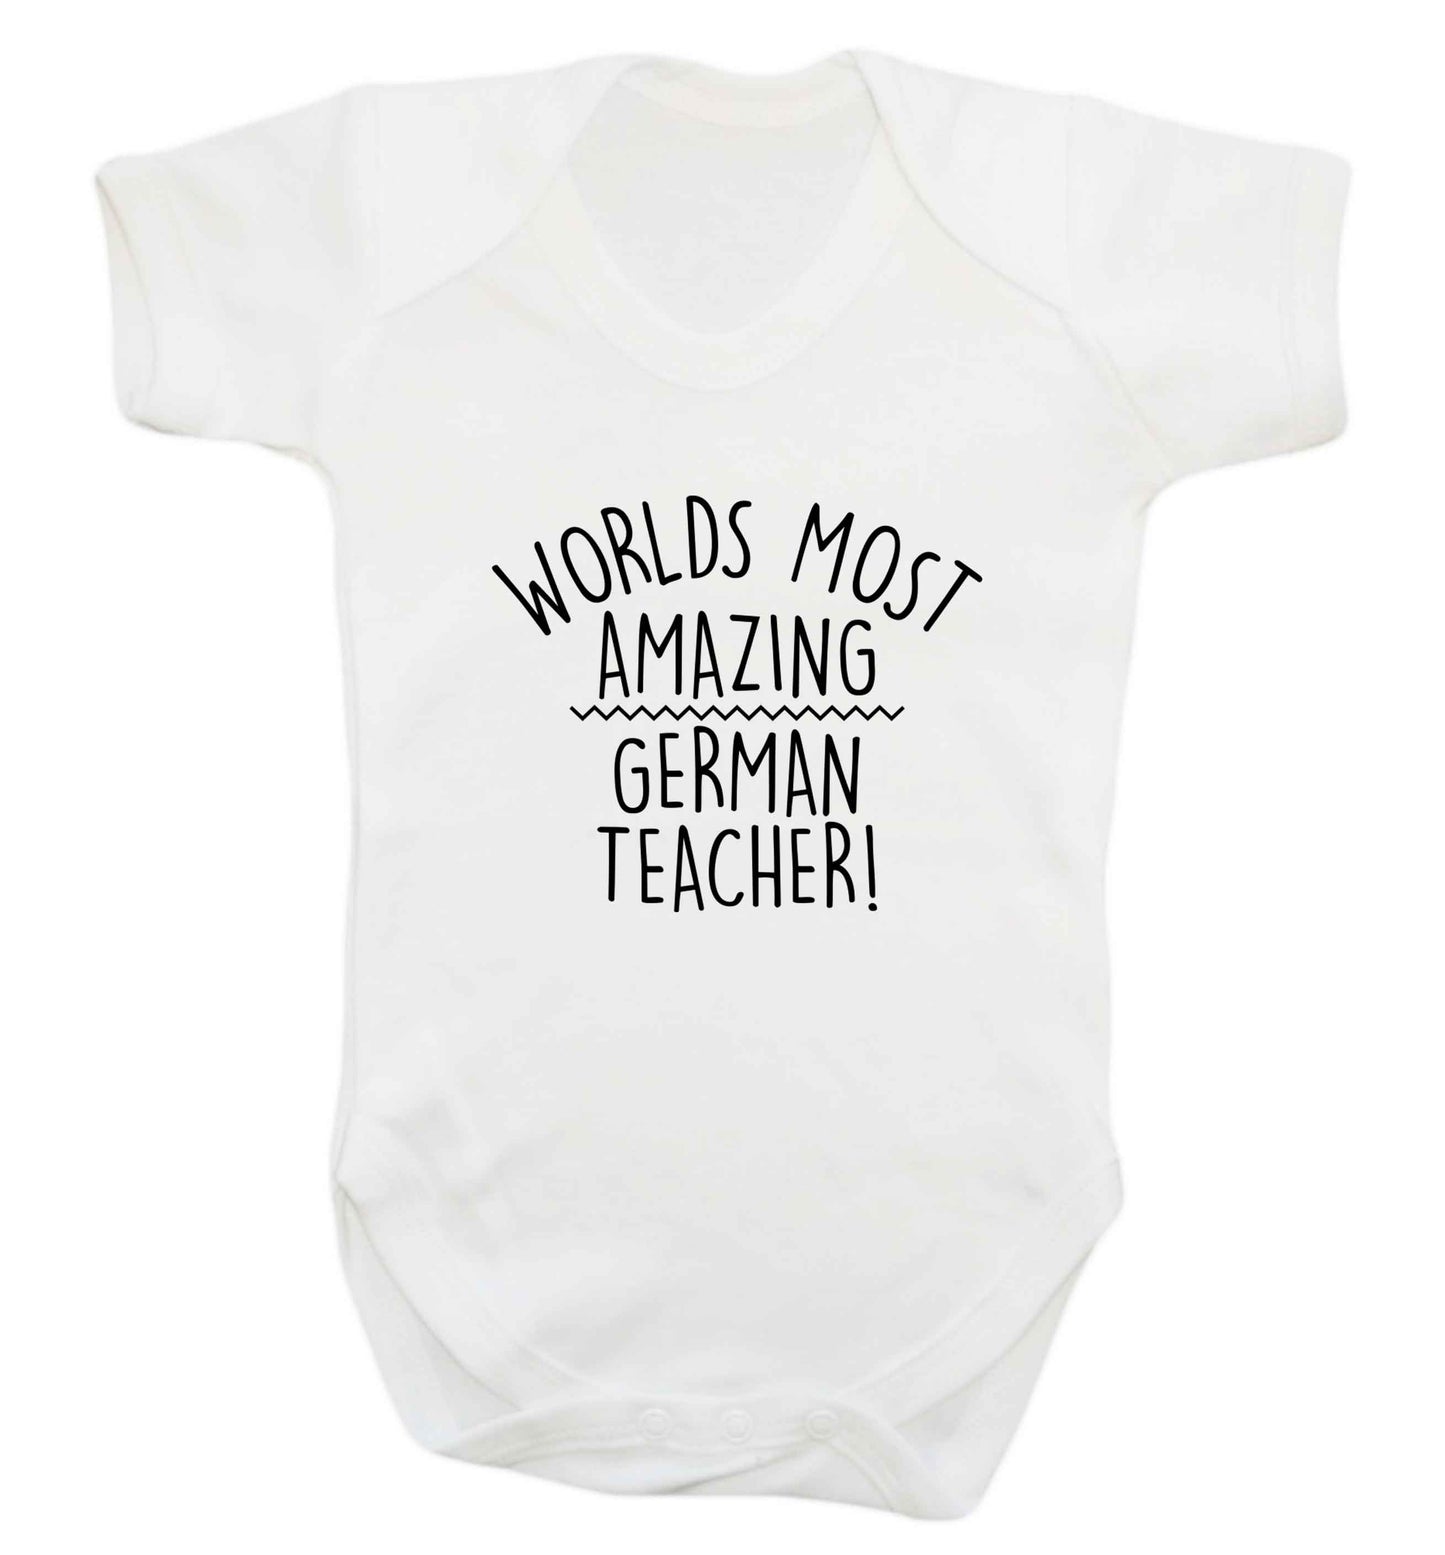 Worlds most amazing German teacher baby vest white 18-24 months